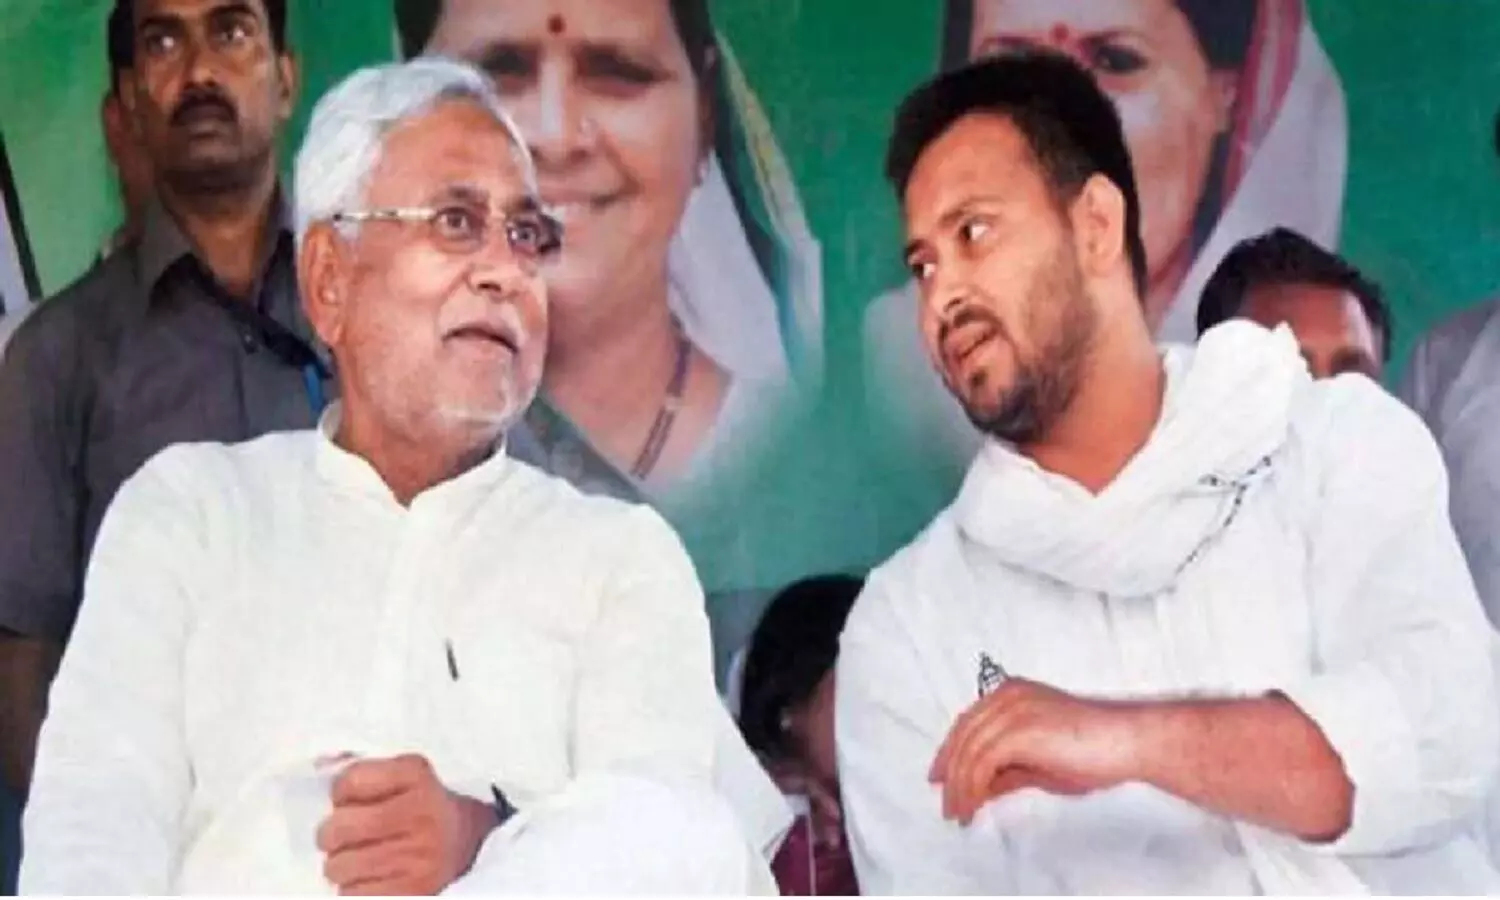 Bihar News: नितीश कुमार 8वीं बार बिहार के सीएम बने, तजस्वी यादव ने ली उपमुख्यमंत्री की शपथ